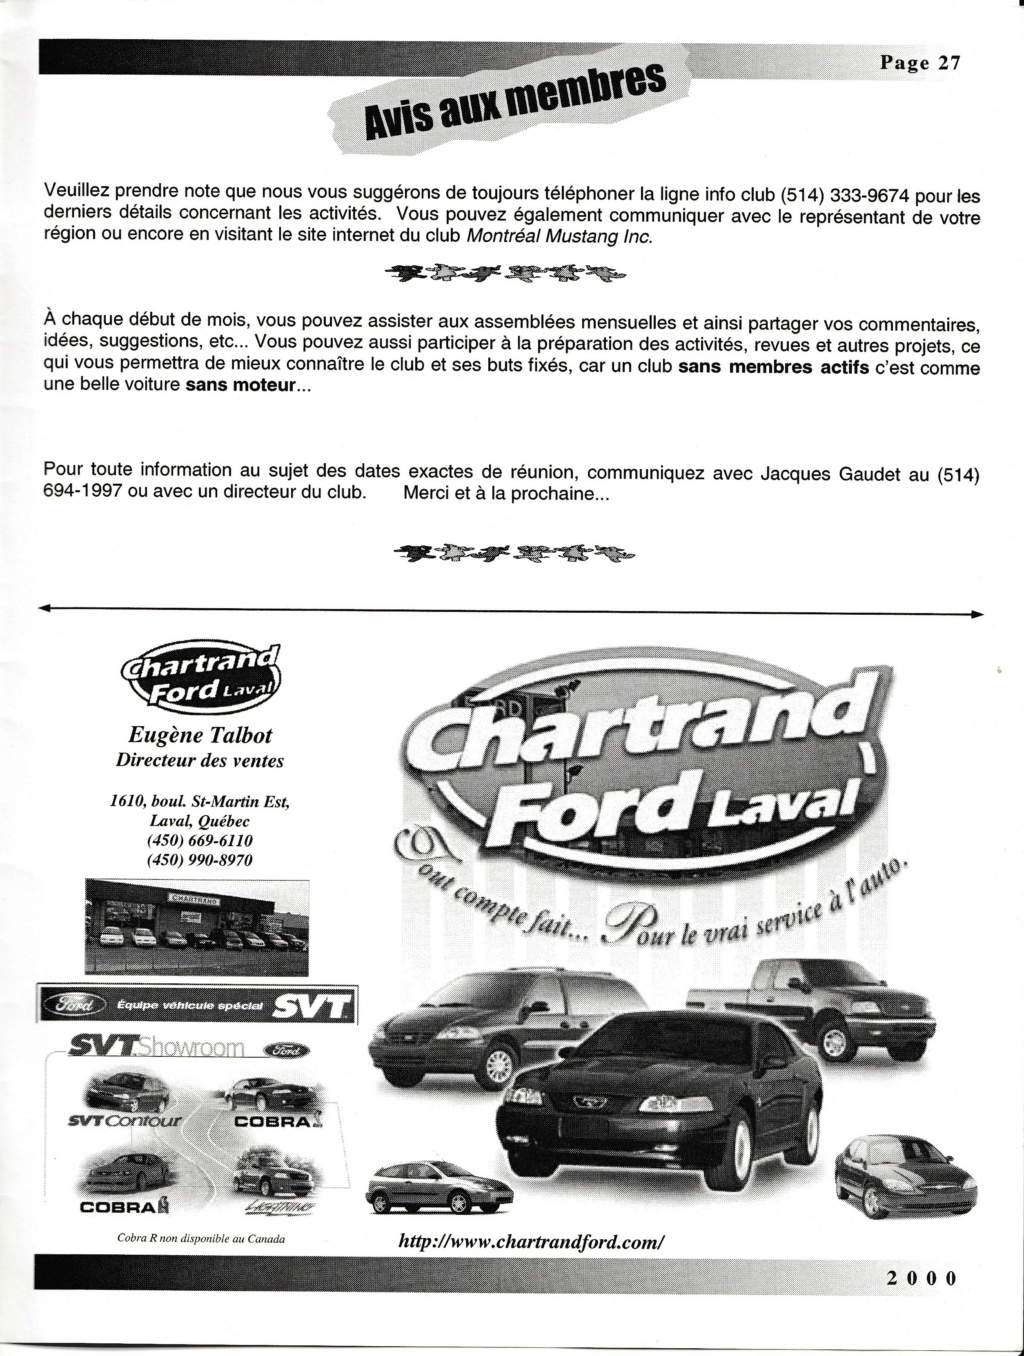 Montréal Mustang dans le temps! 1981 à aujourd'hui (Histoire en photos) - Page 9 Img_2537